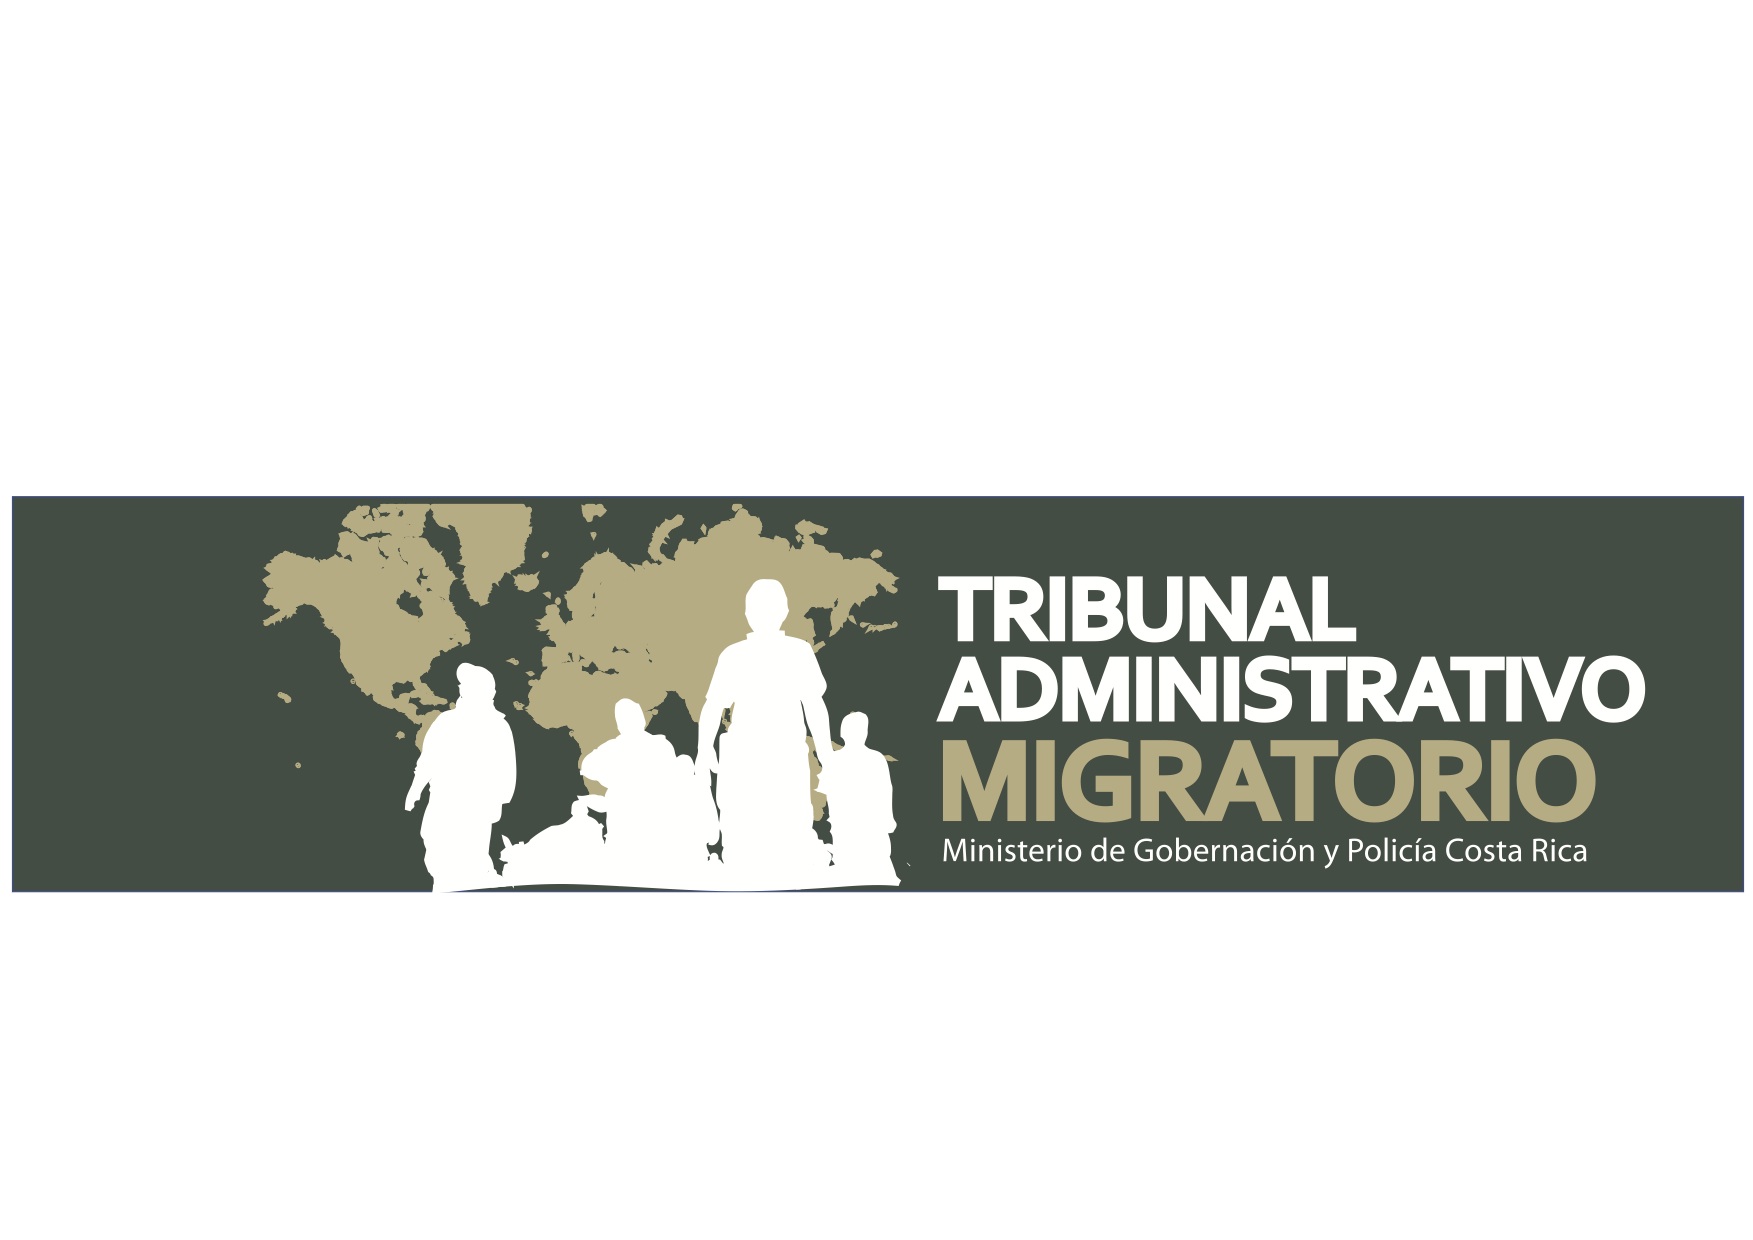 Siluetas blancas de 4 personas que representan al tribuna administrativo migratorio